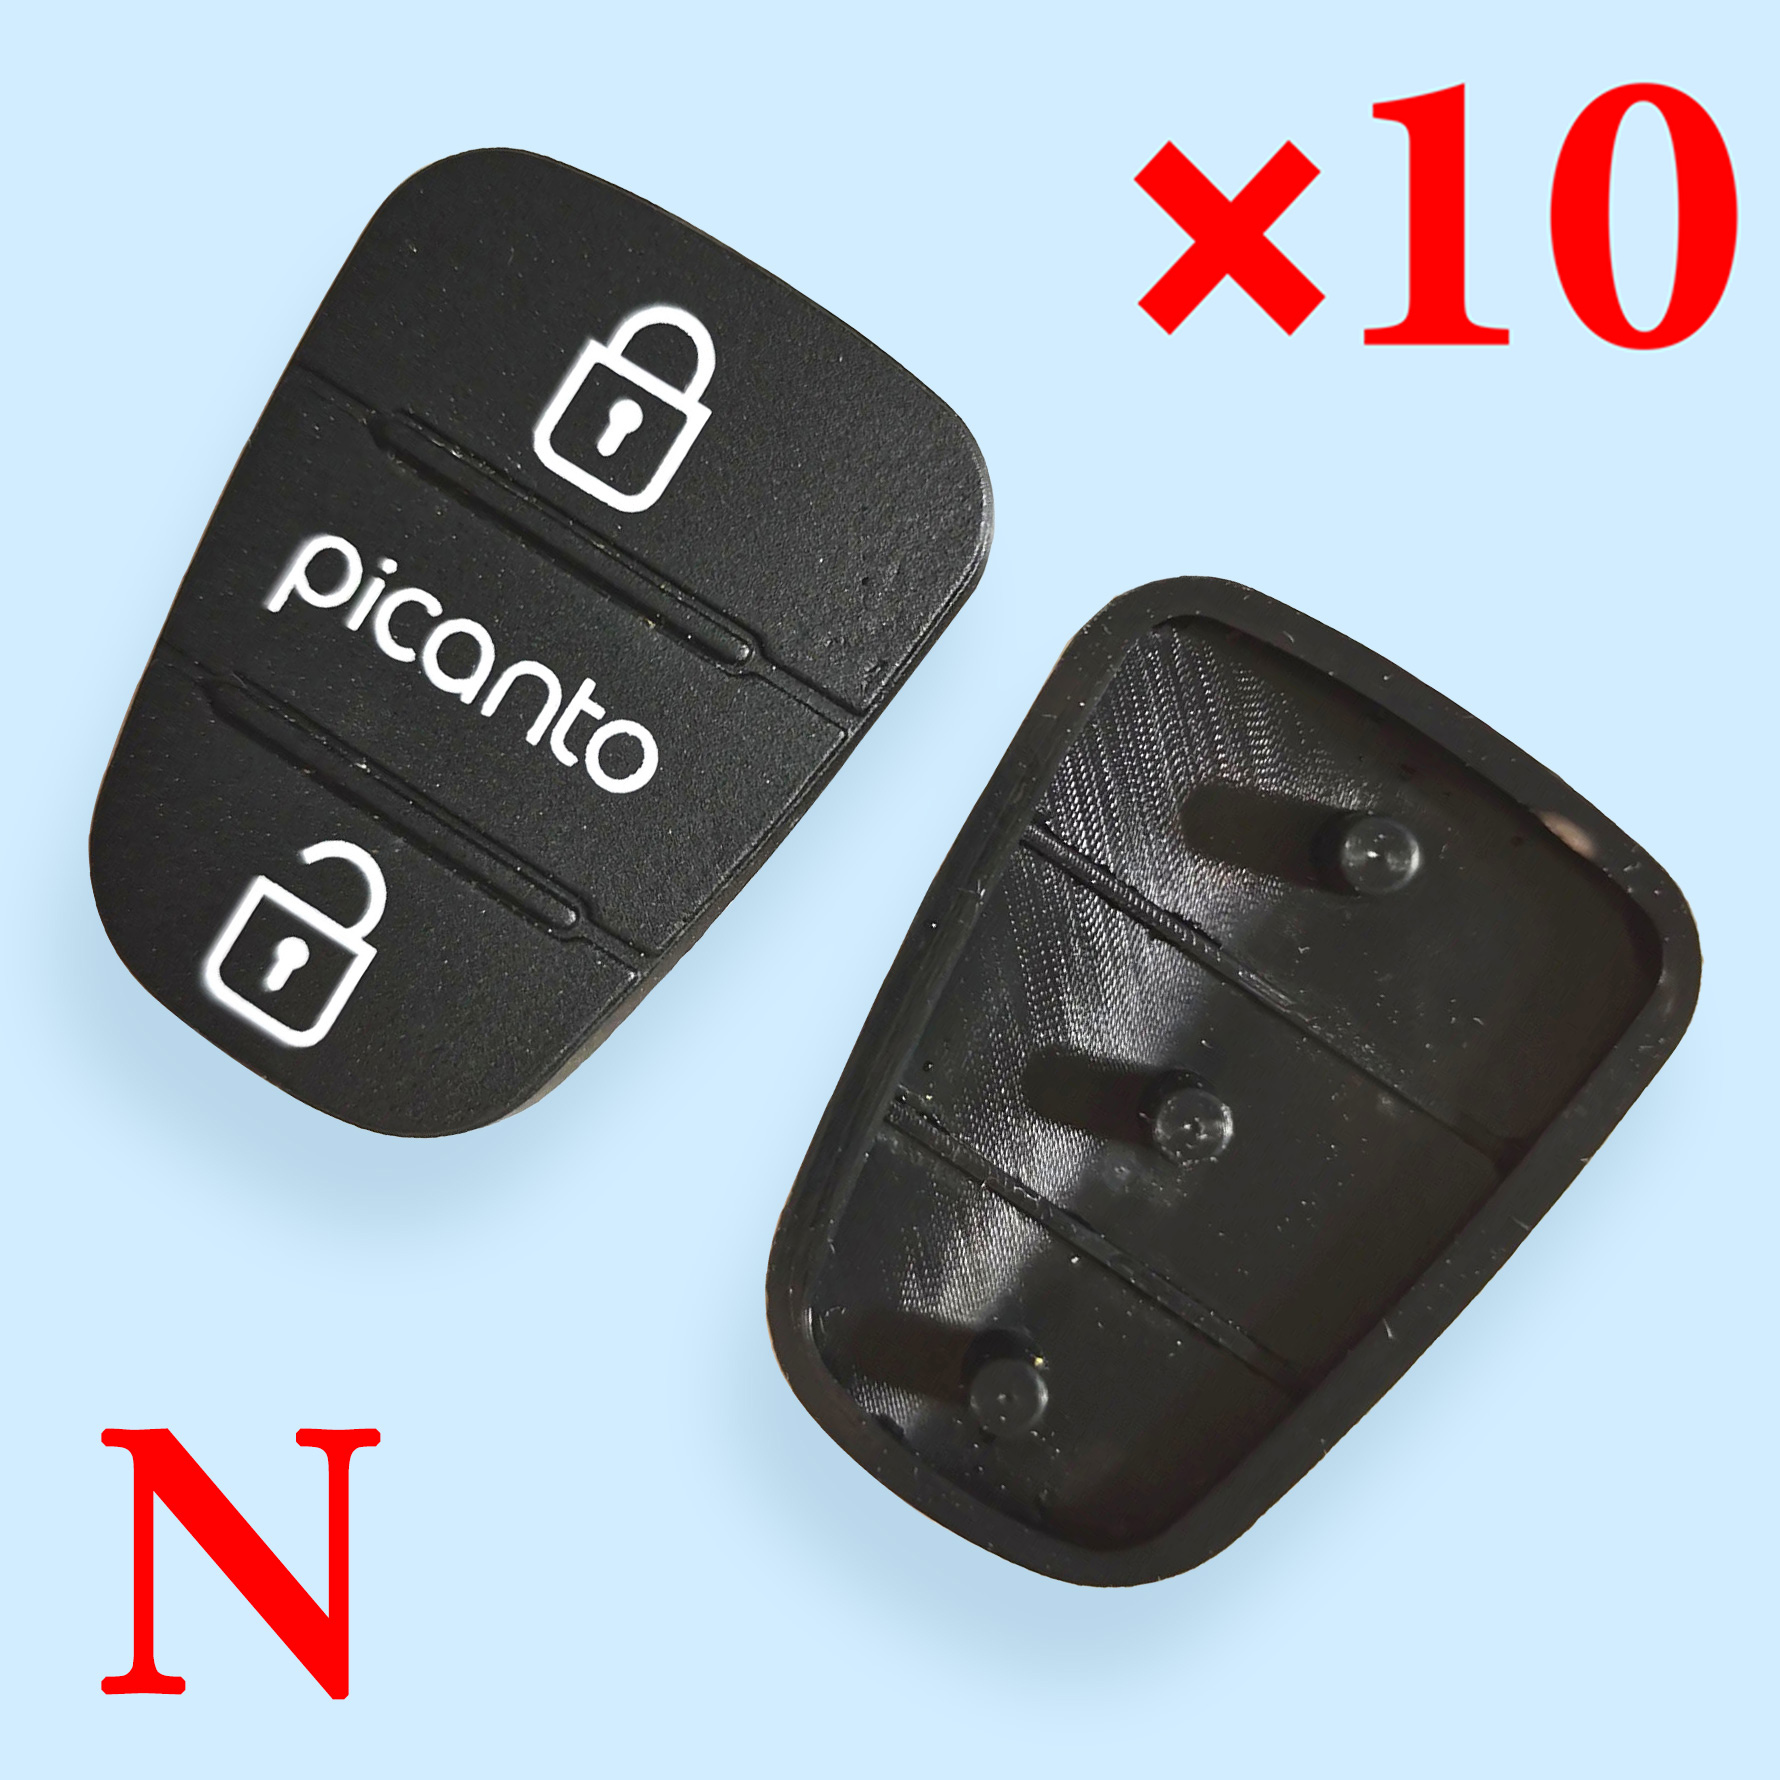 3 button Remote Keys Rubber Button Pad for Kia Picanto 10 pcs